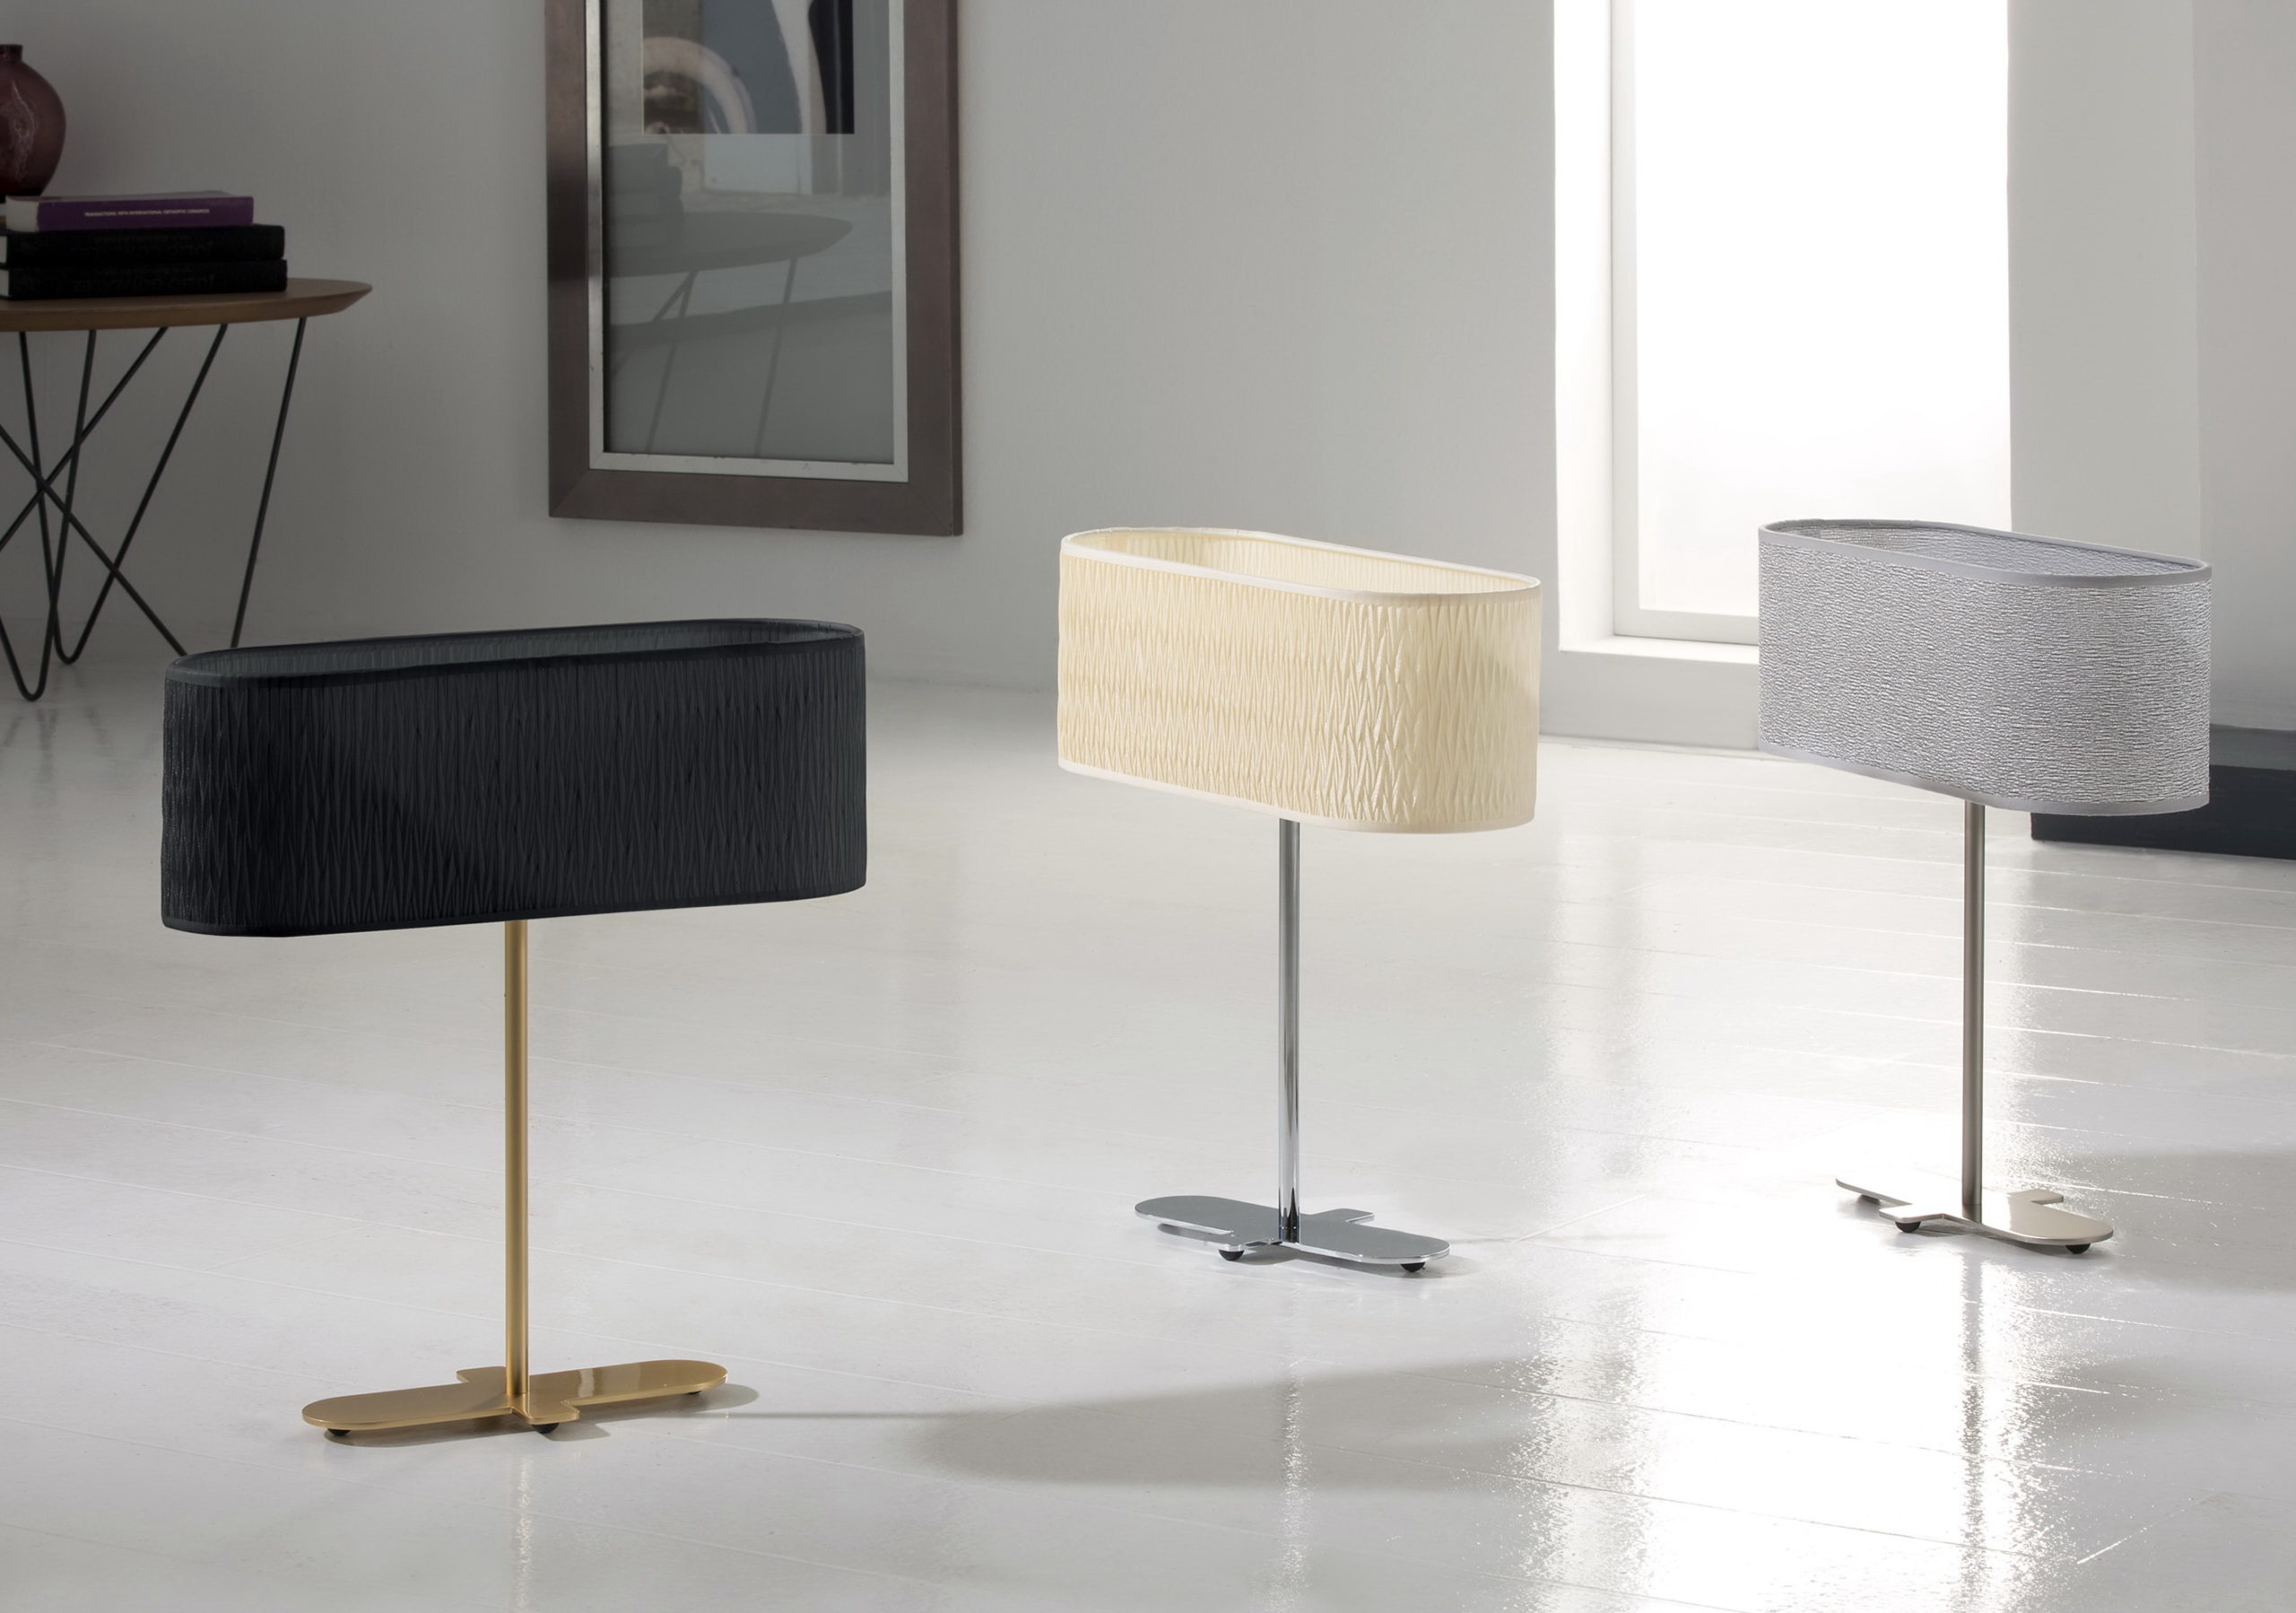 Lámpara mesita modernas 5505 by Ilusoria Lamps en muebles antoñán® León